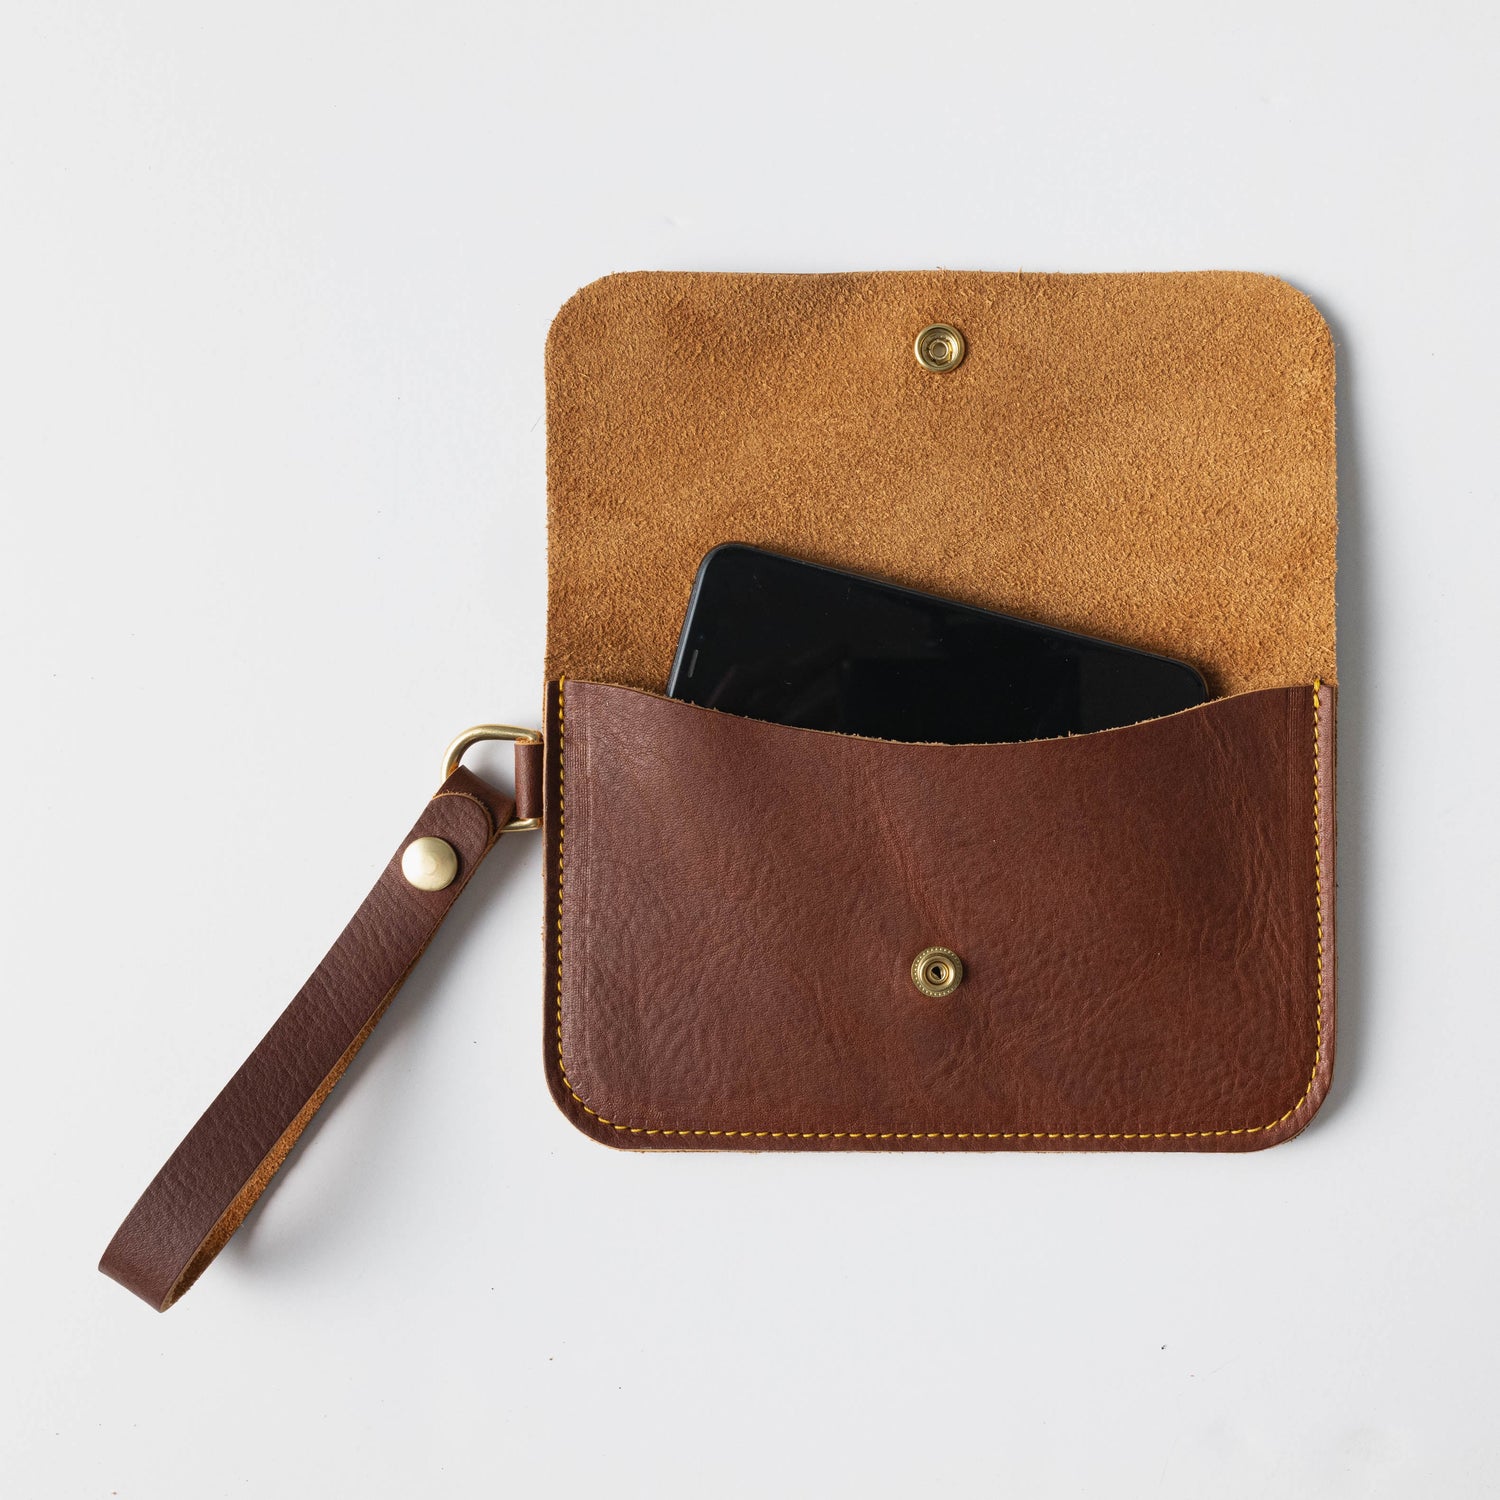 Womens Leather Wallet, Leather Clutch Wallet for Women, Wristlet